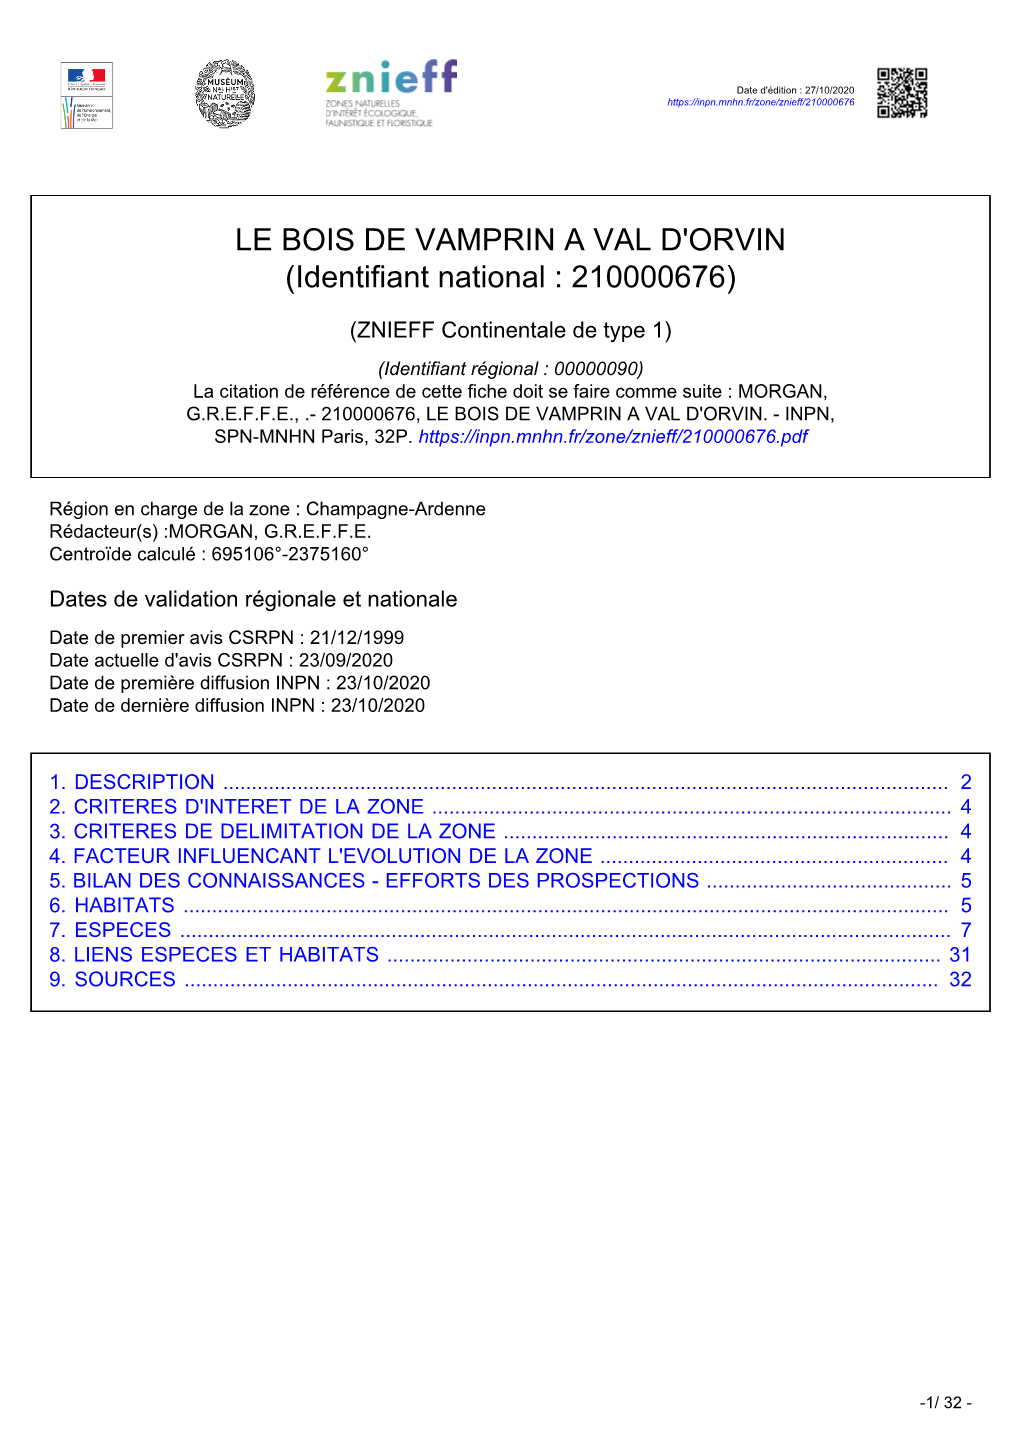 LE BOIS DE VAMPRIN a VAL D'orvin (Identifiant National : 210000676)